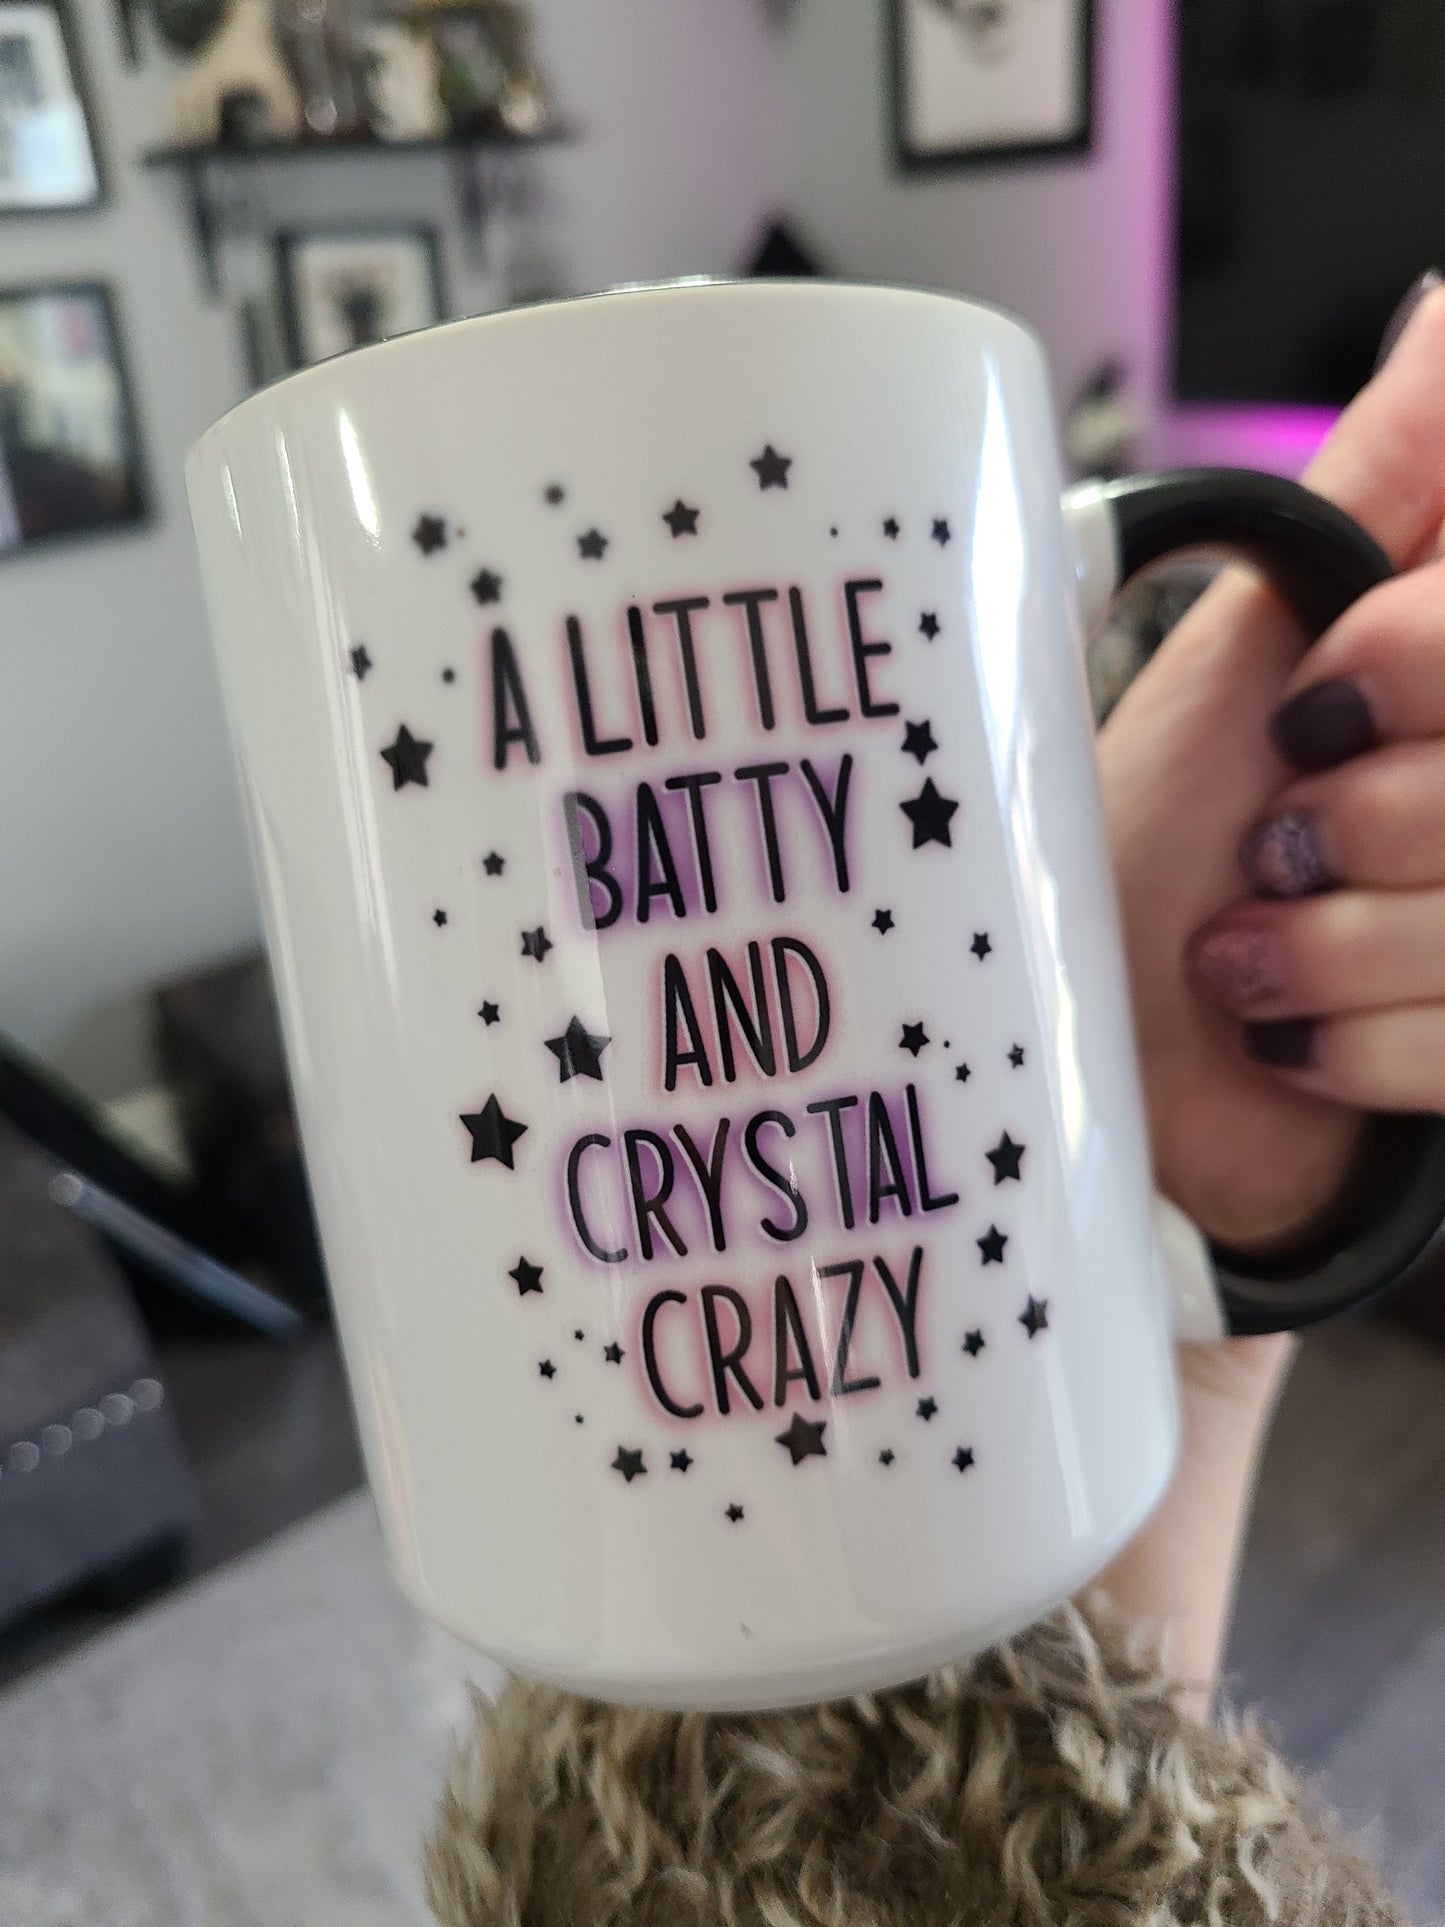 Batty and Crystal Crazy Mug